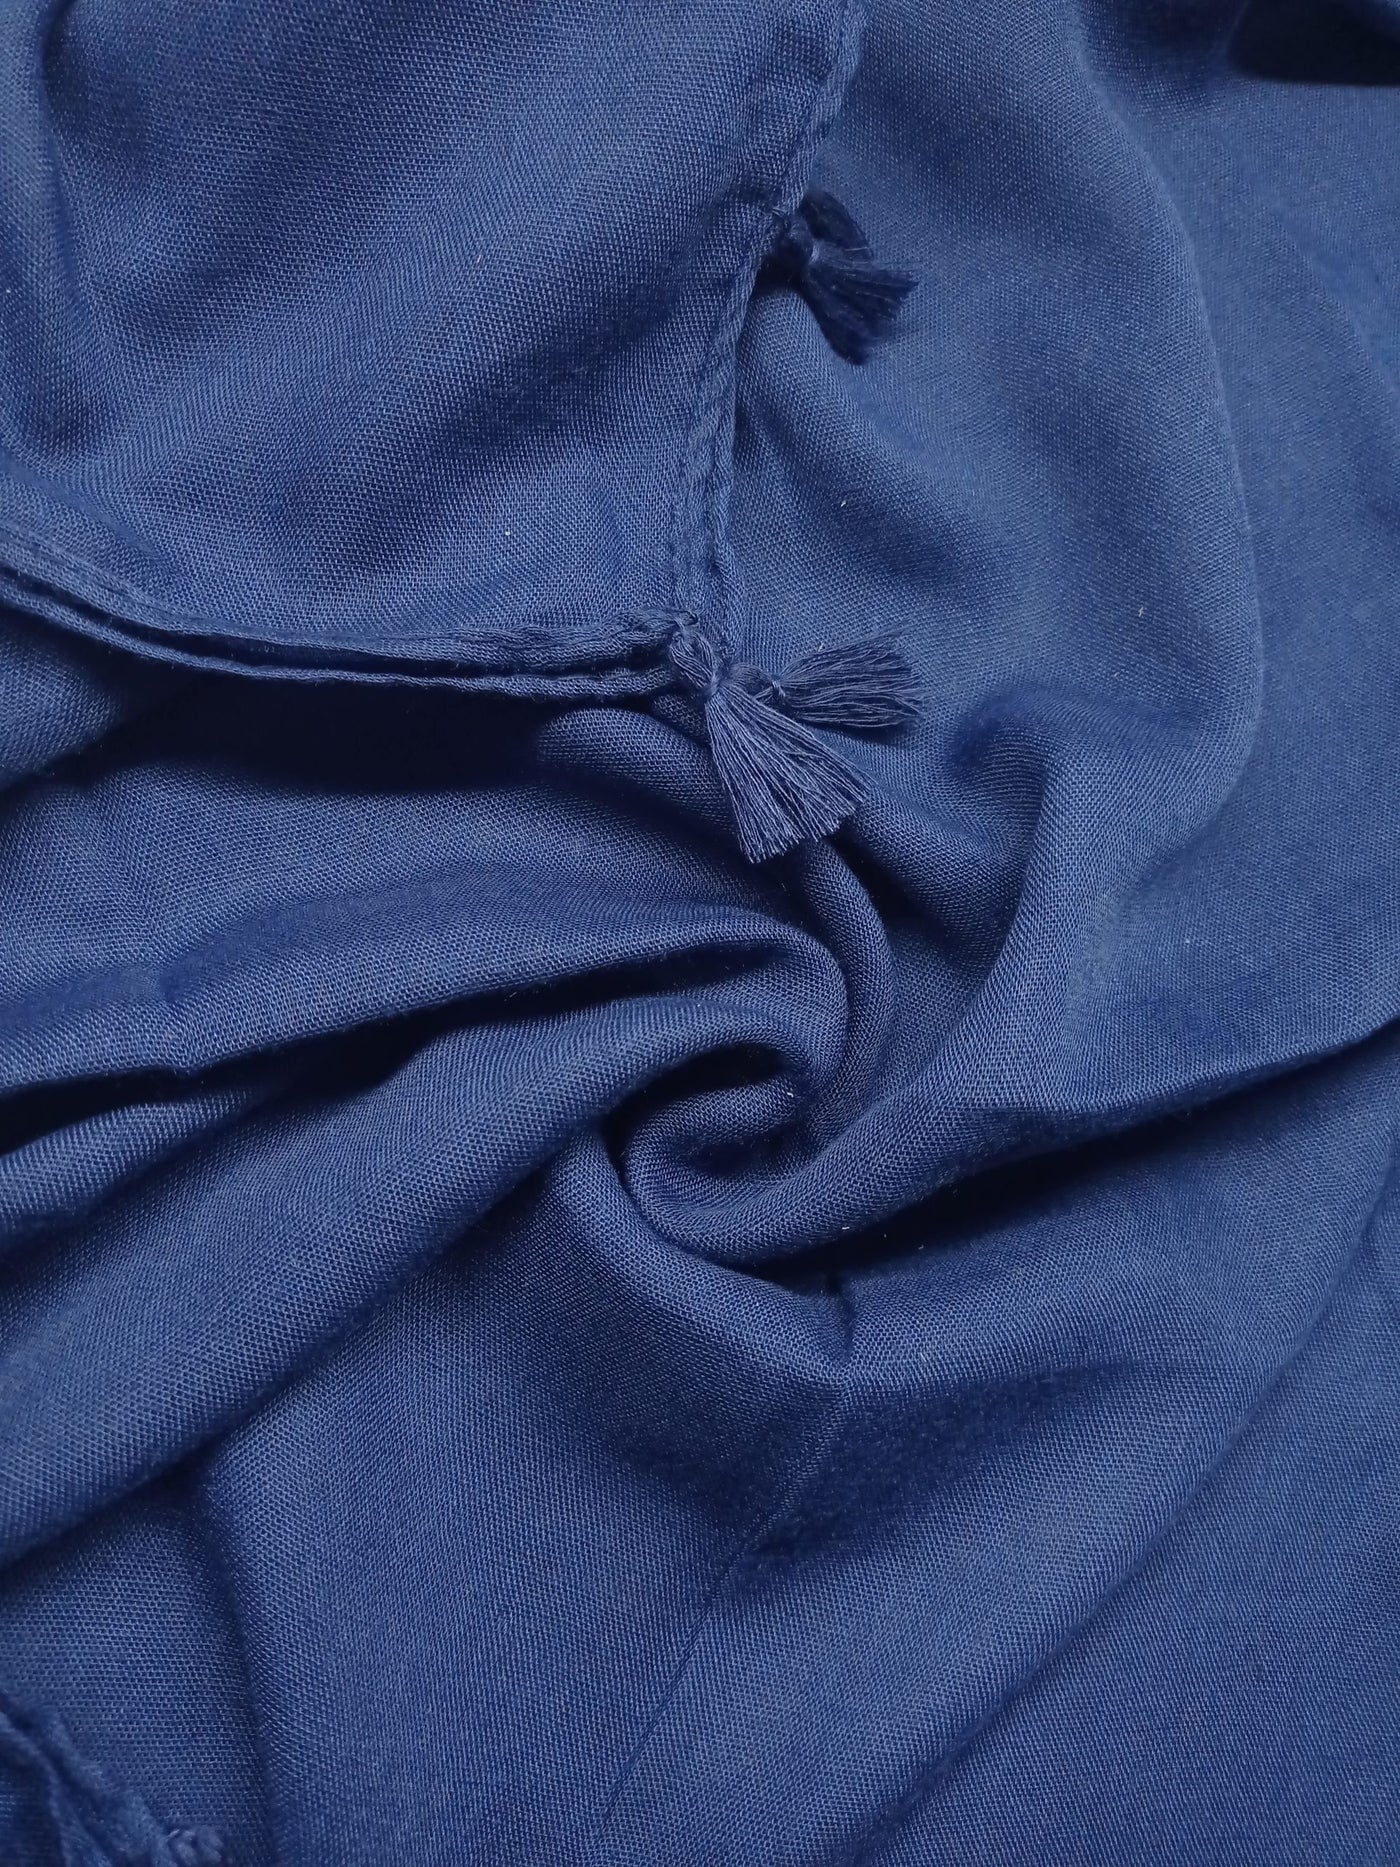 Lawn Tassels – Navy Blue - Scarfs.pk #1 Online Hijab Store